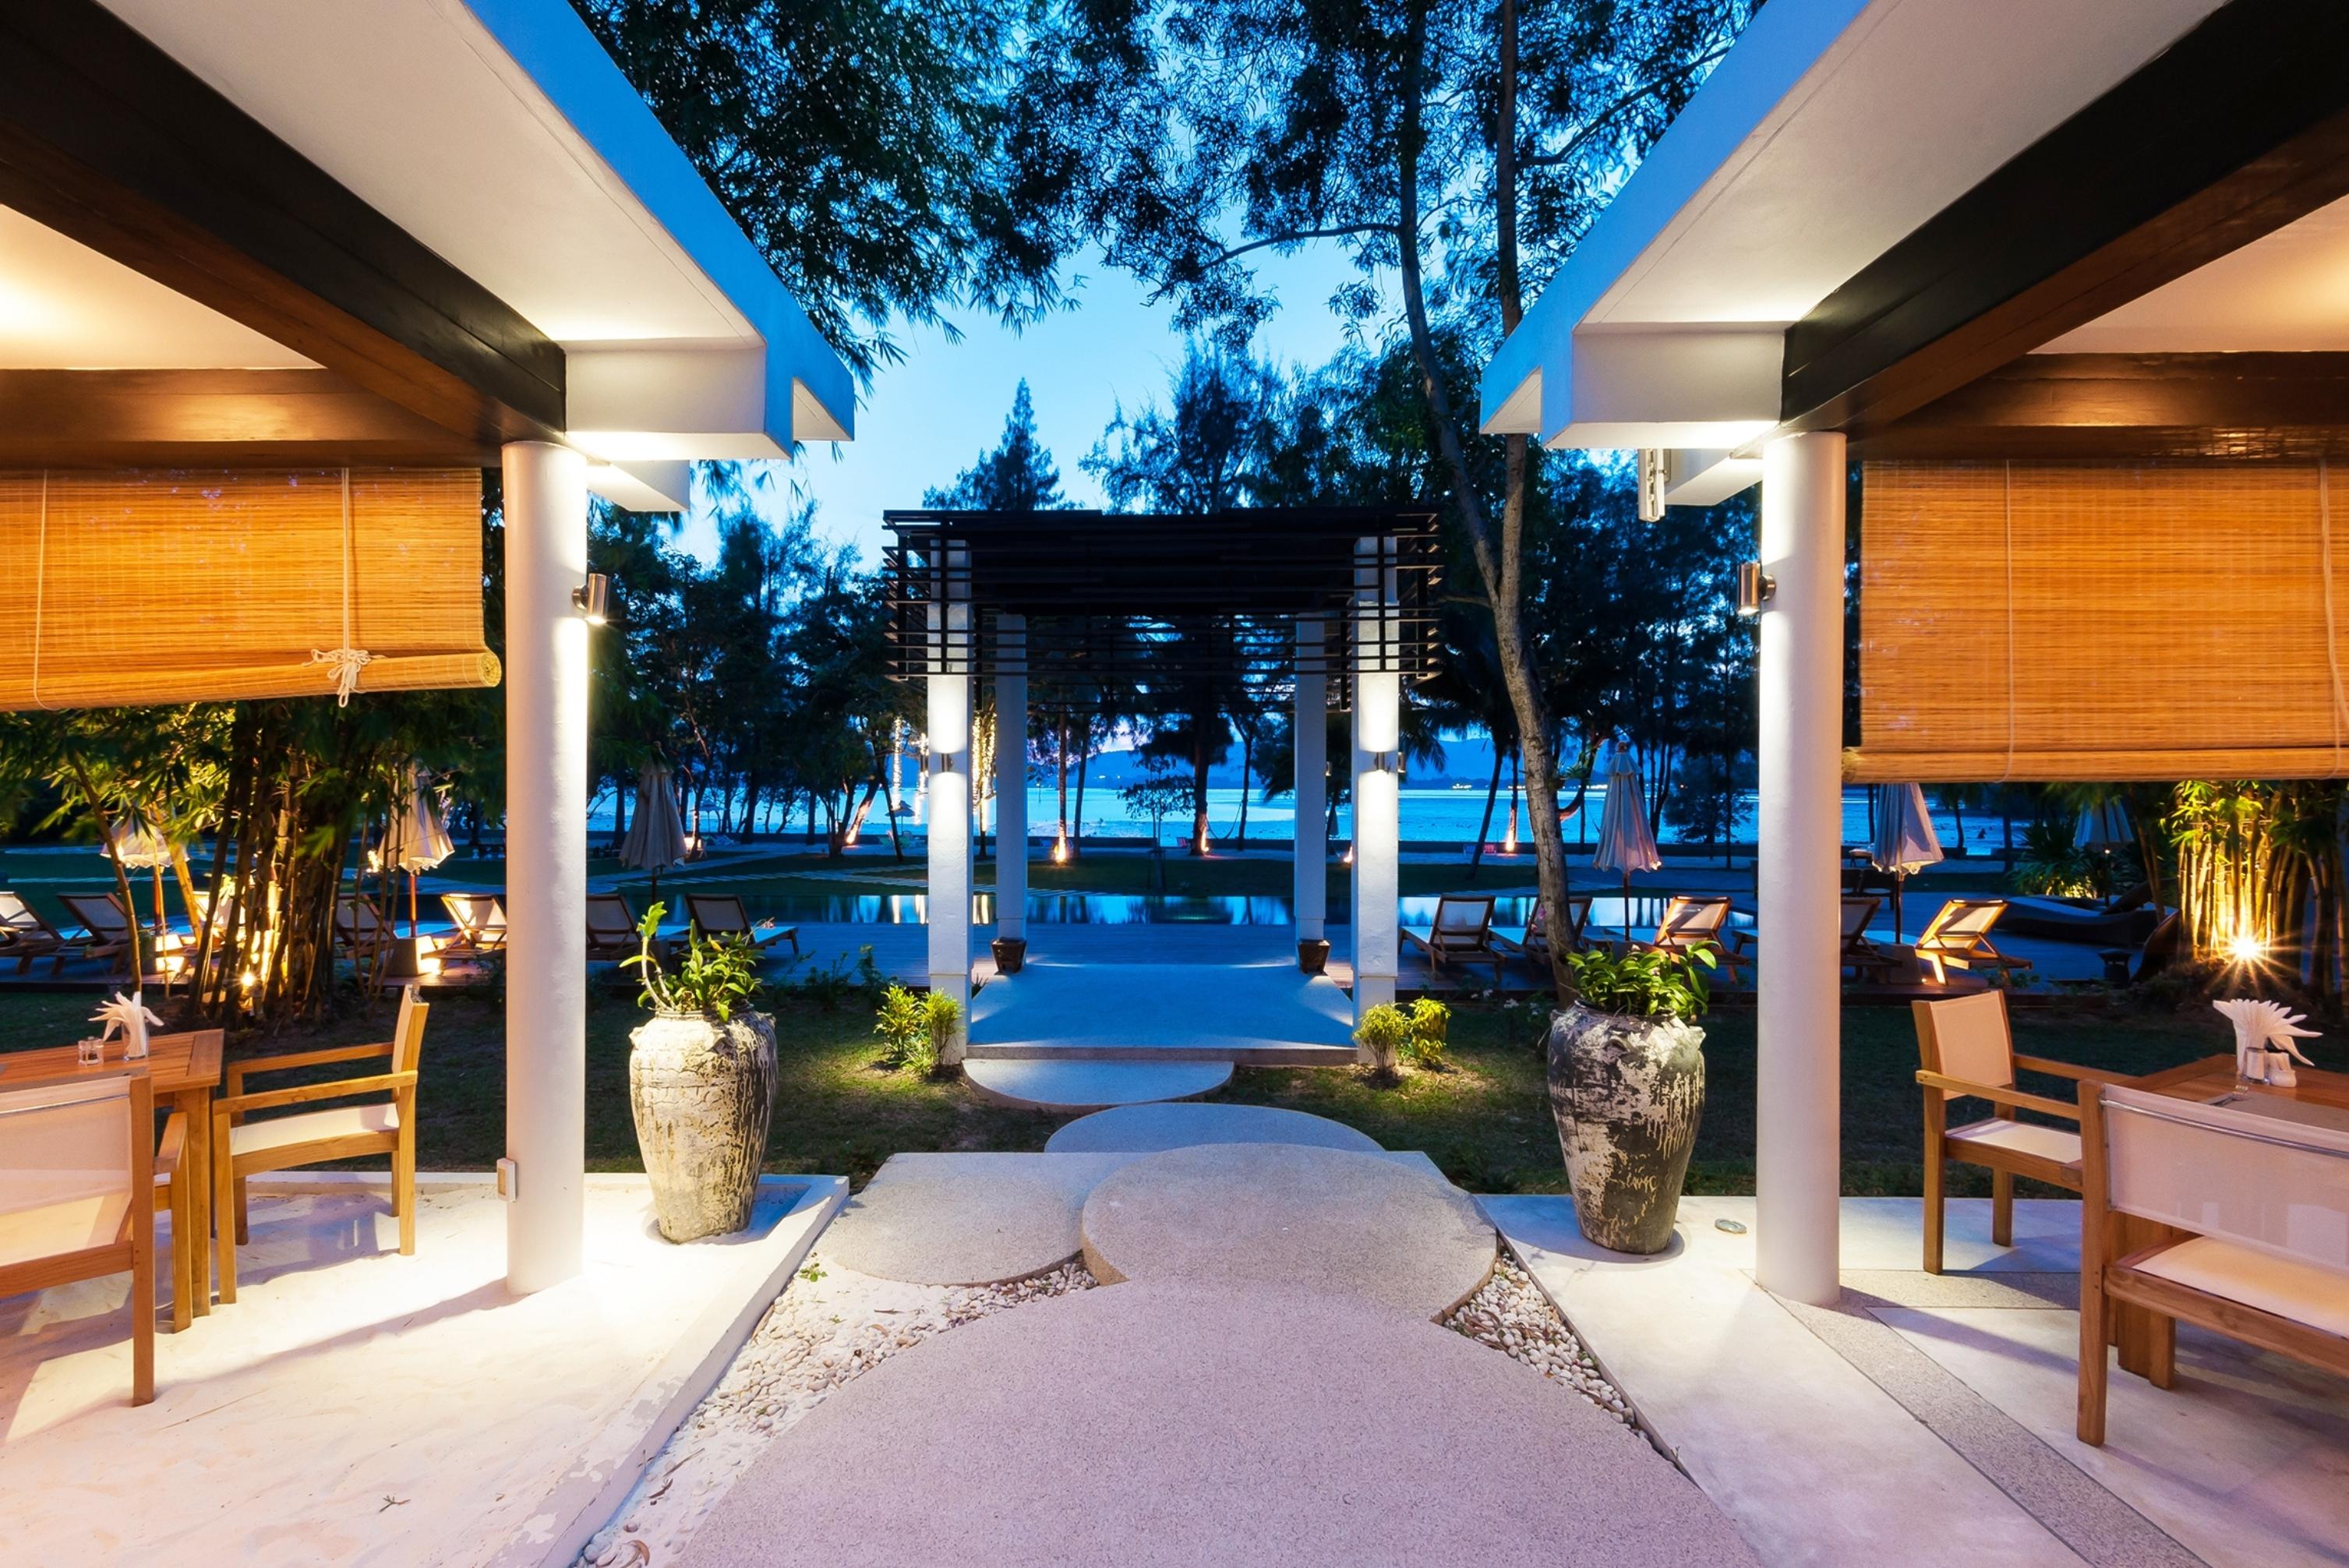 蓝猴红树林酒店【SHA Plus+】 攀瓦海滩 外观 照片